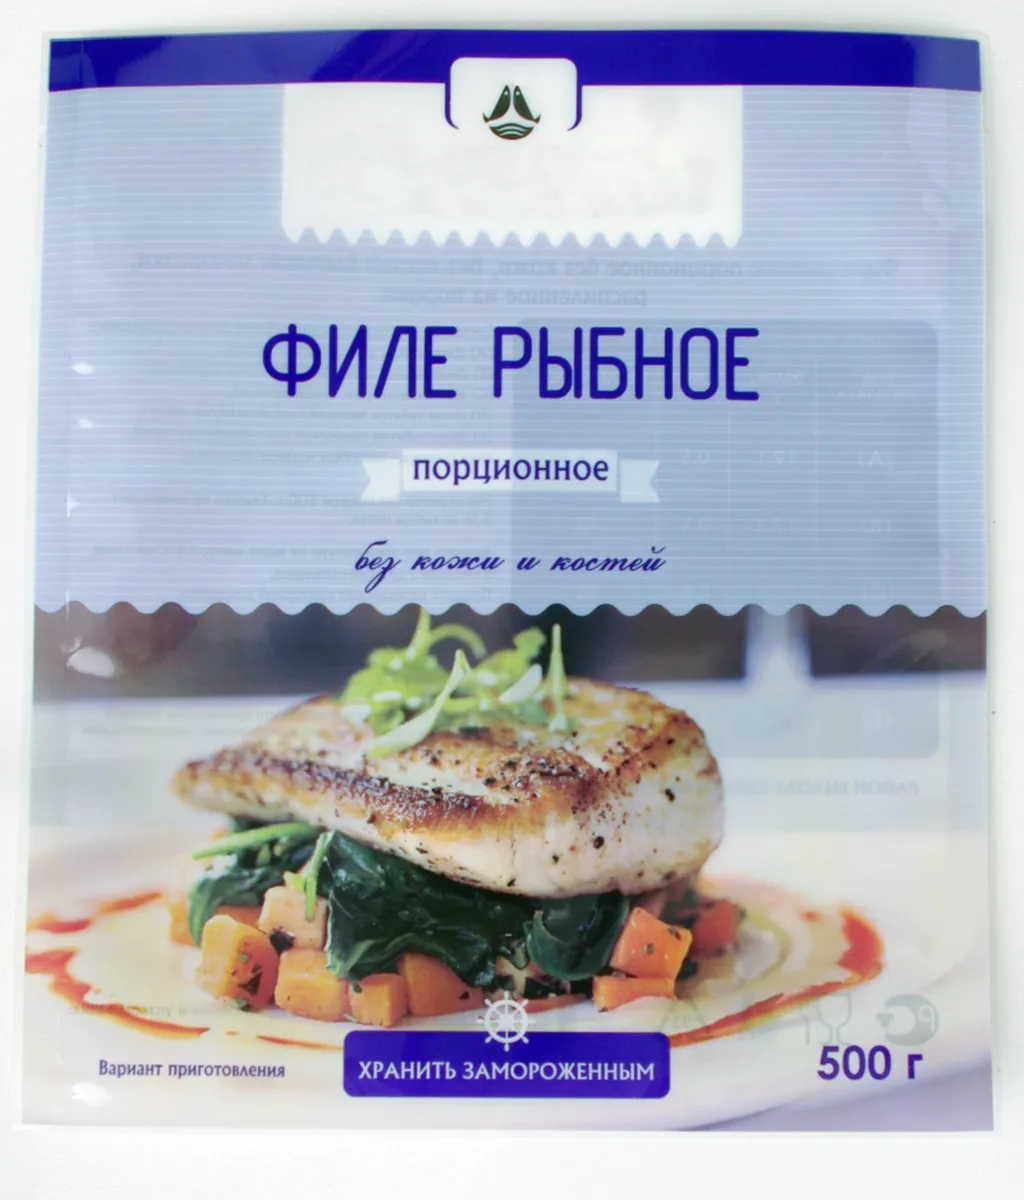 упаковка морепродуктов для розницы в Москве 8